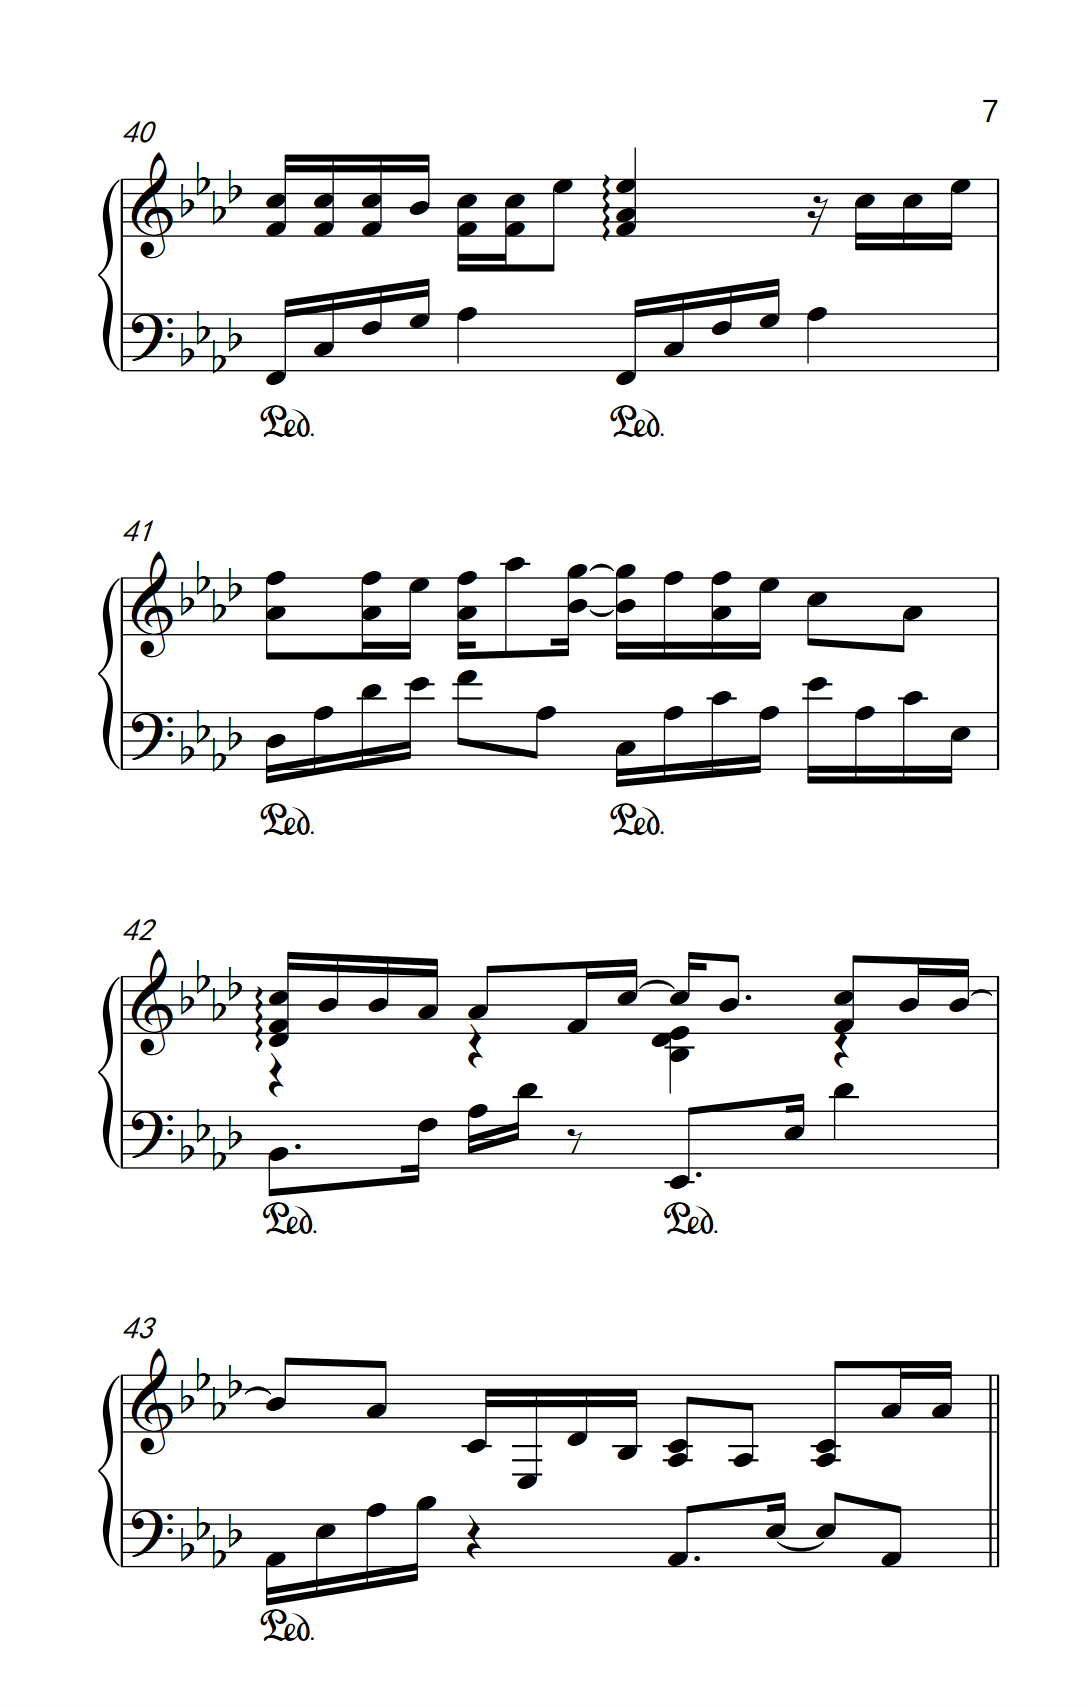 有个爱你的人不容易-完整版双手简谱预览1-钢琴谱文件（五线谱、双手简谱、数字谱、Midi、PDF）免费下载